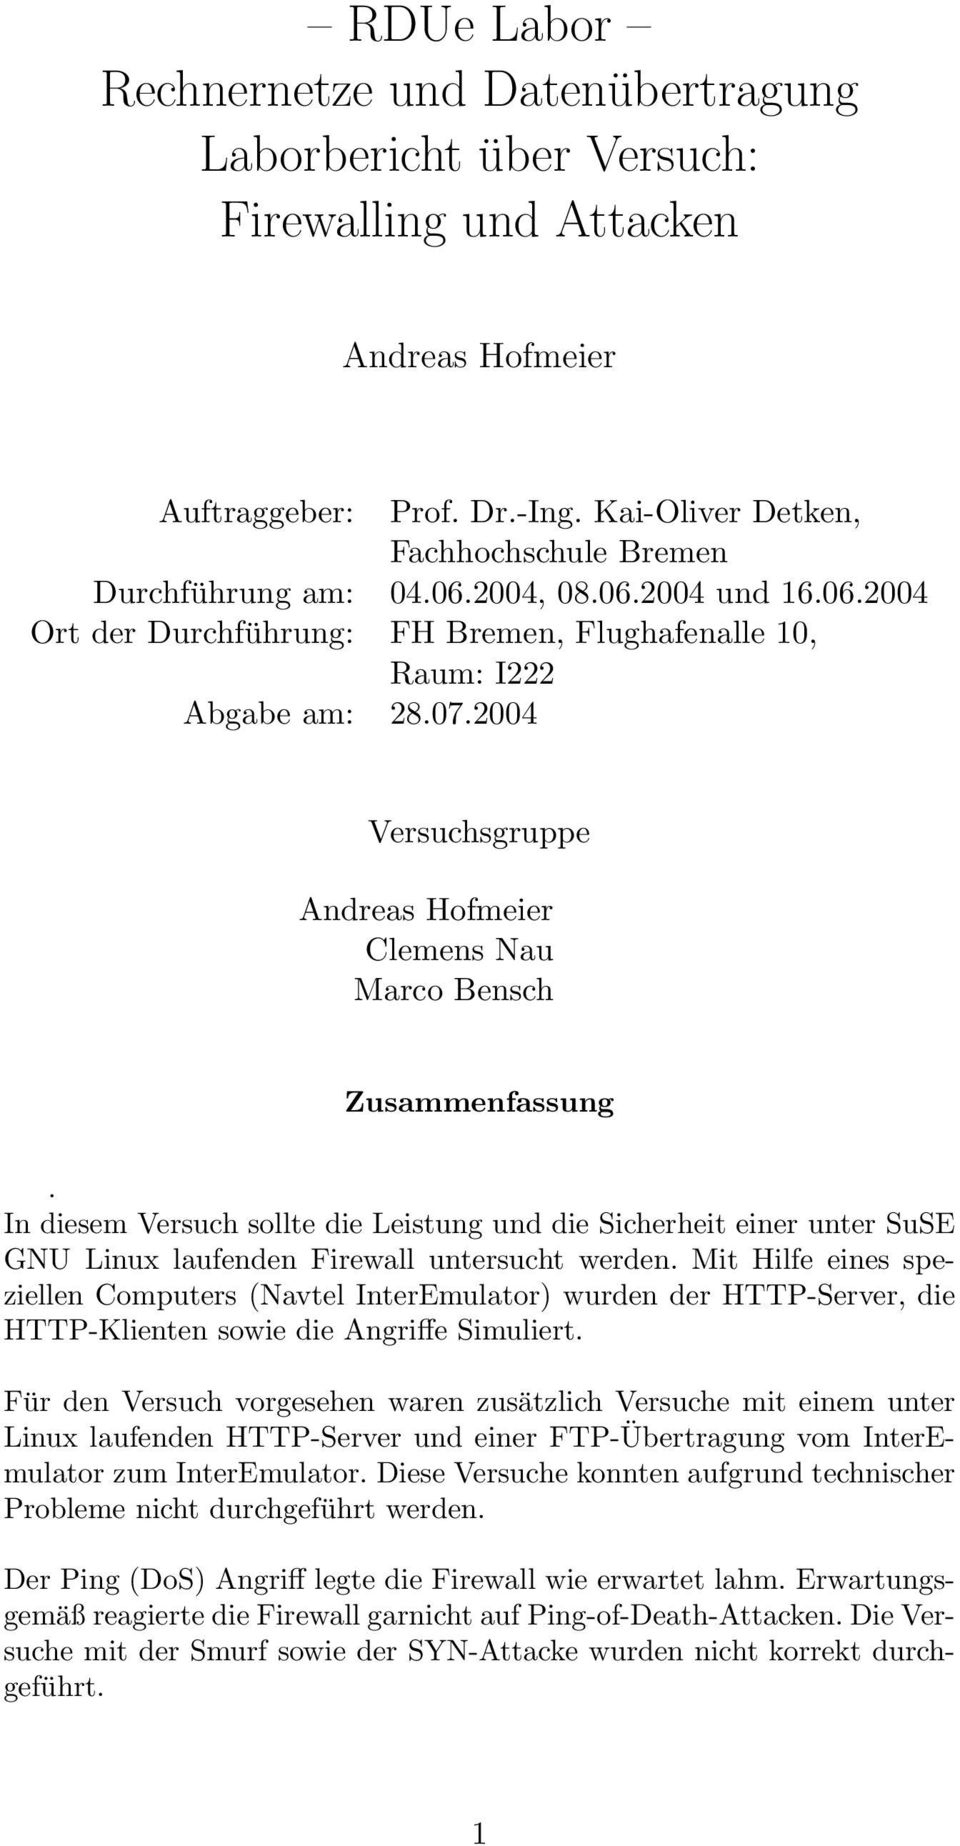 2004 Versuchsgruppe Andreas Hofmeier Clemens Nau Marco Bensch Zusammenfassung. In diesem Versuch sollte die Leistung und die Sicherheit einer unter SuSE GNU Linux laufenden Firewall untersucht werden.